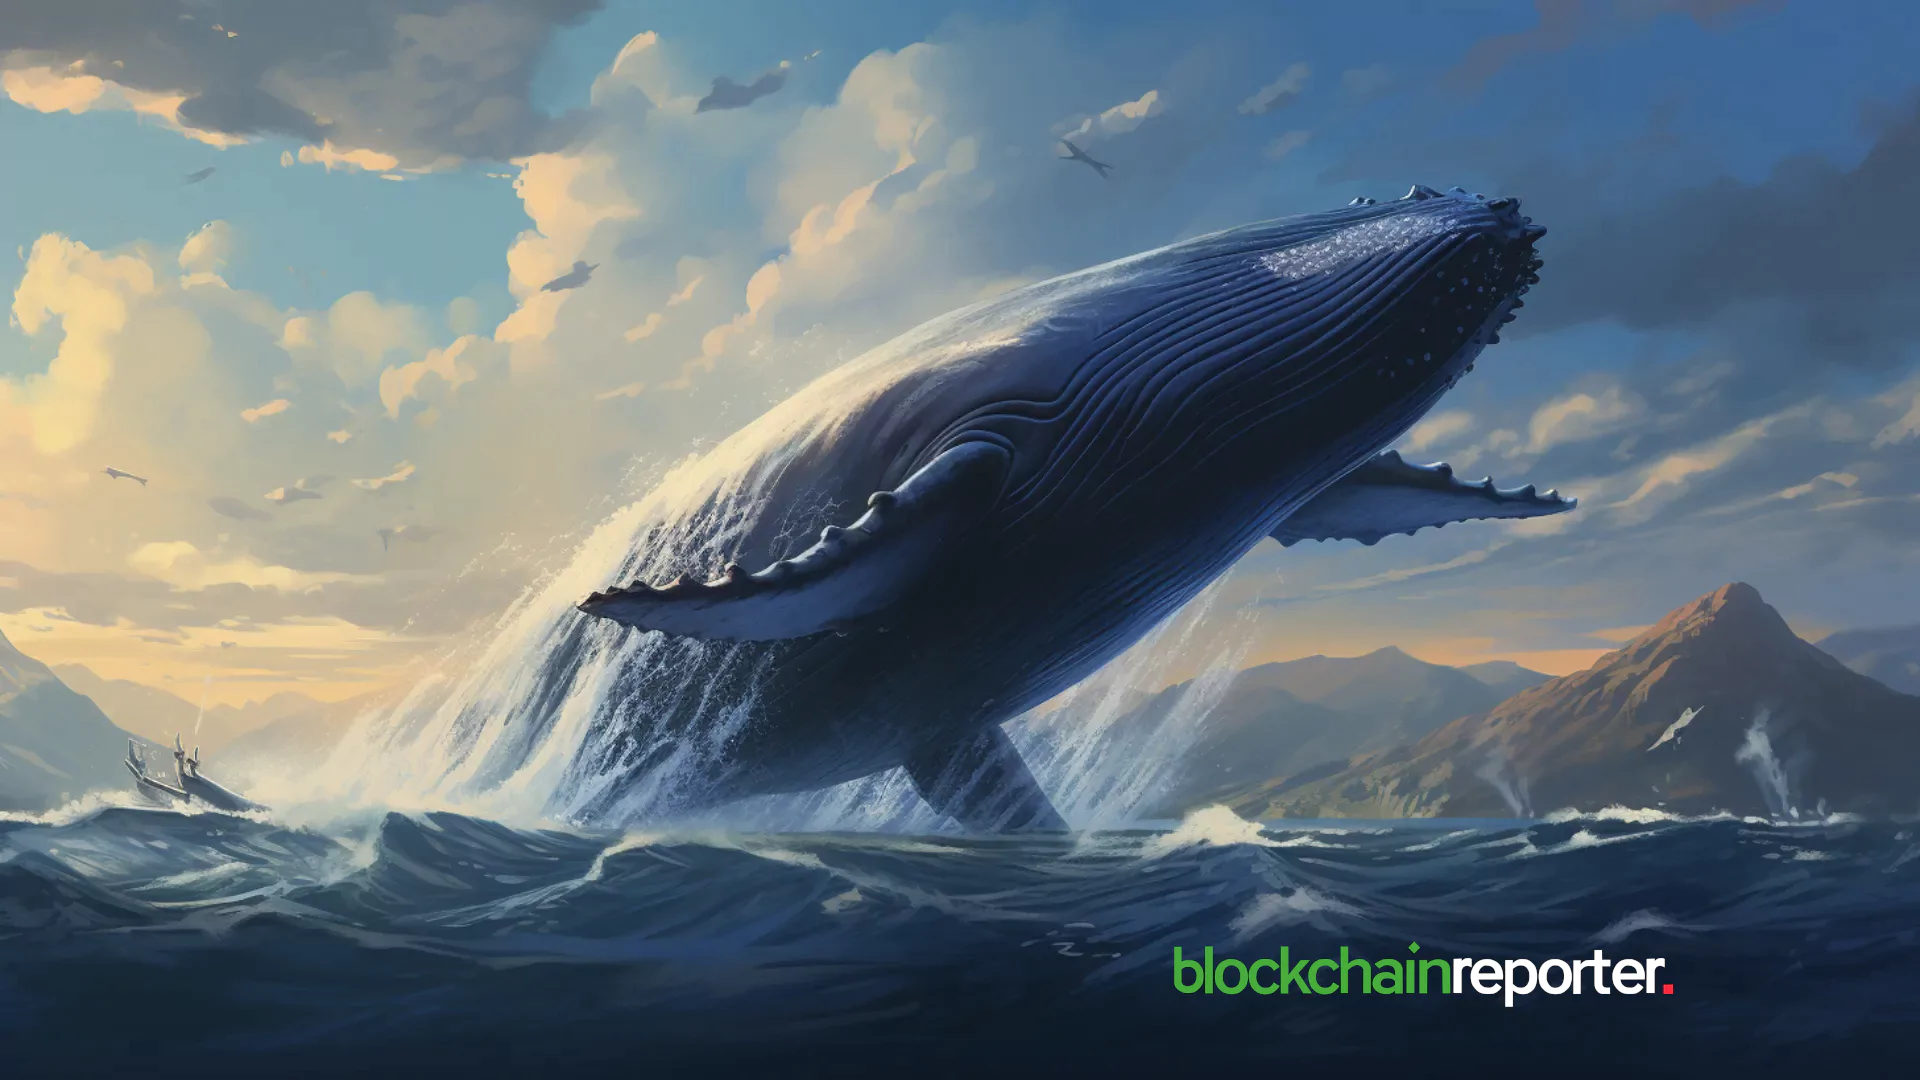 $BEER Whale's $8.89B Token Origin Raises Questions